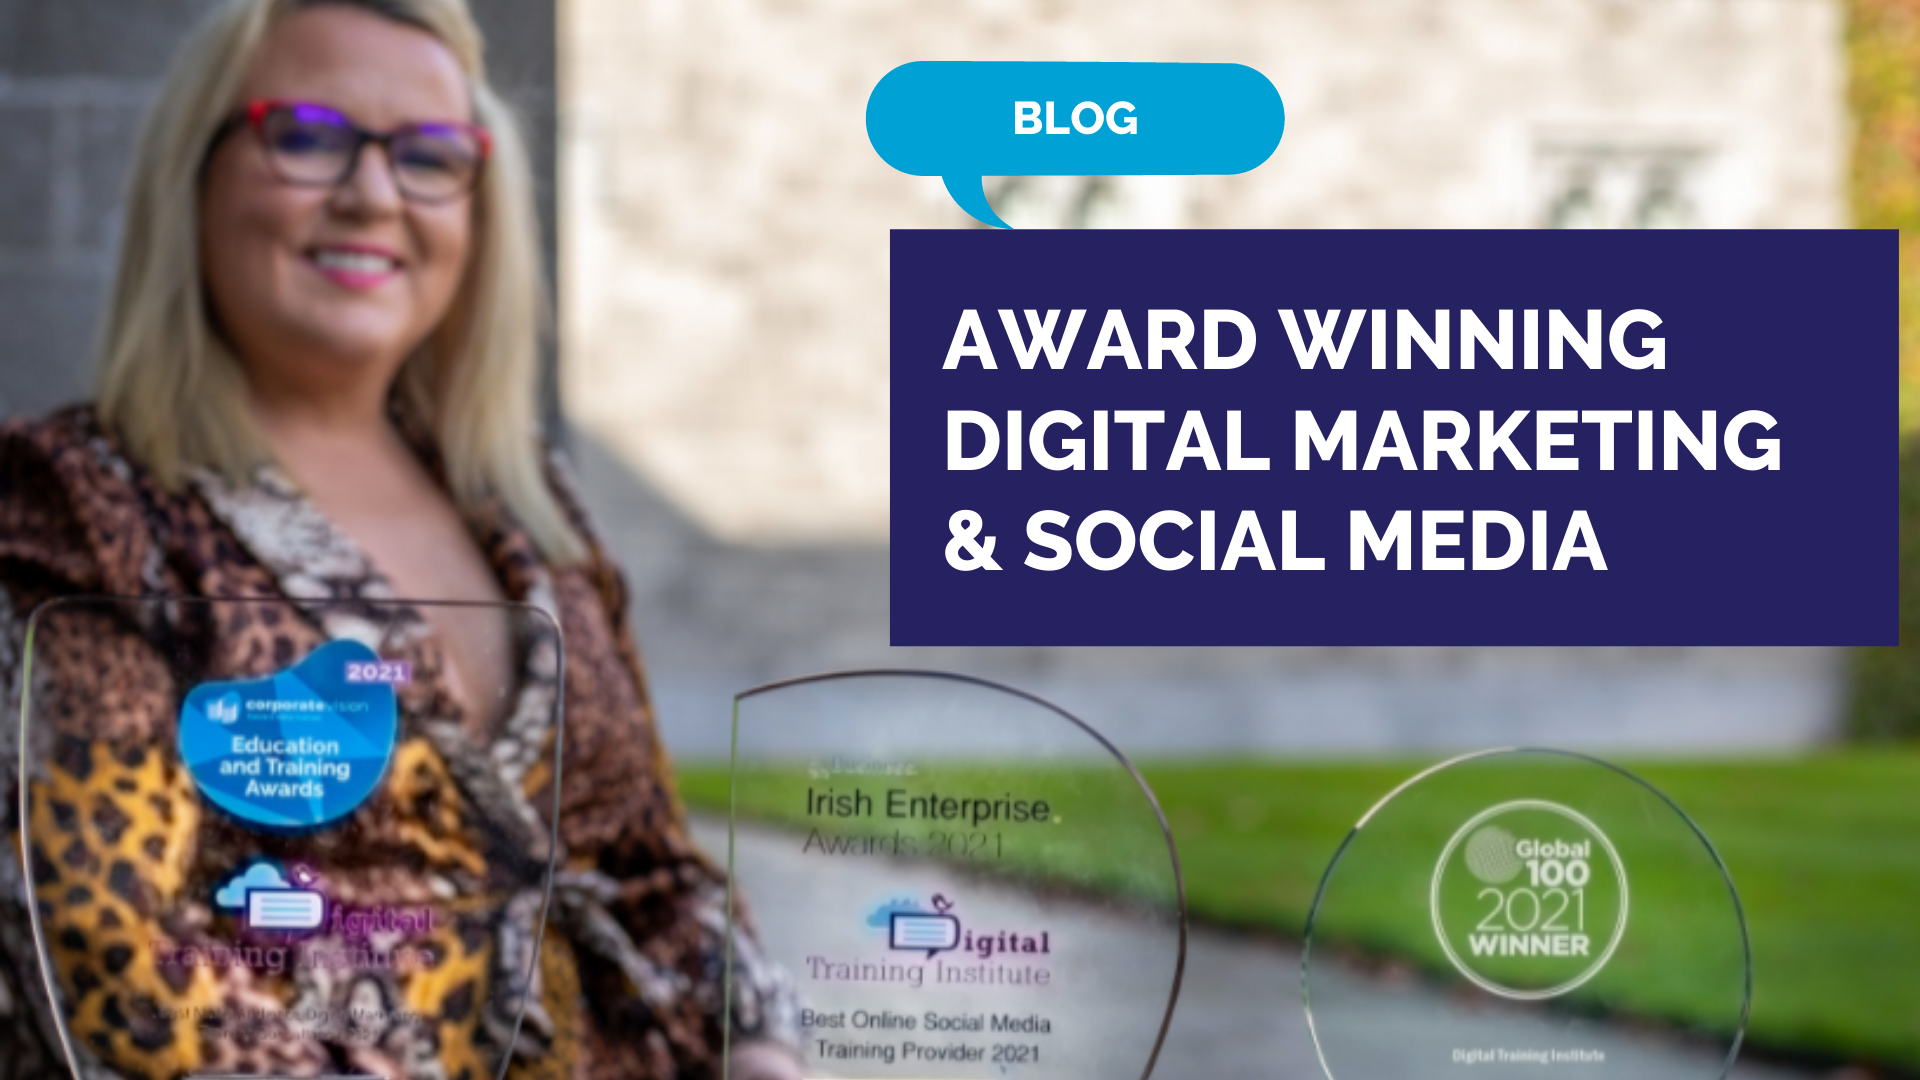 Award Winning Digital Marketing & Social Media for Public Sector